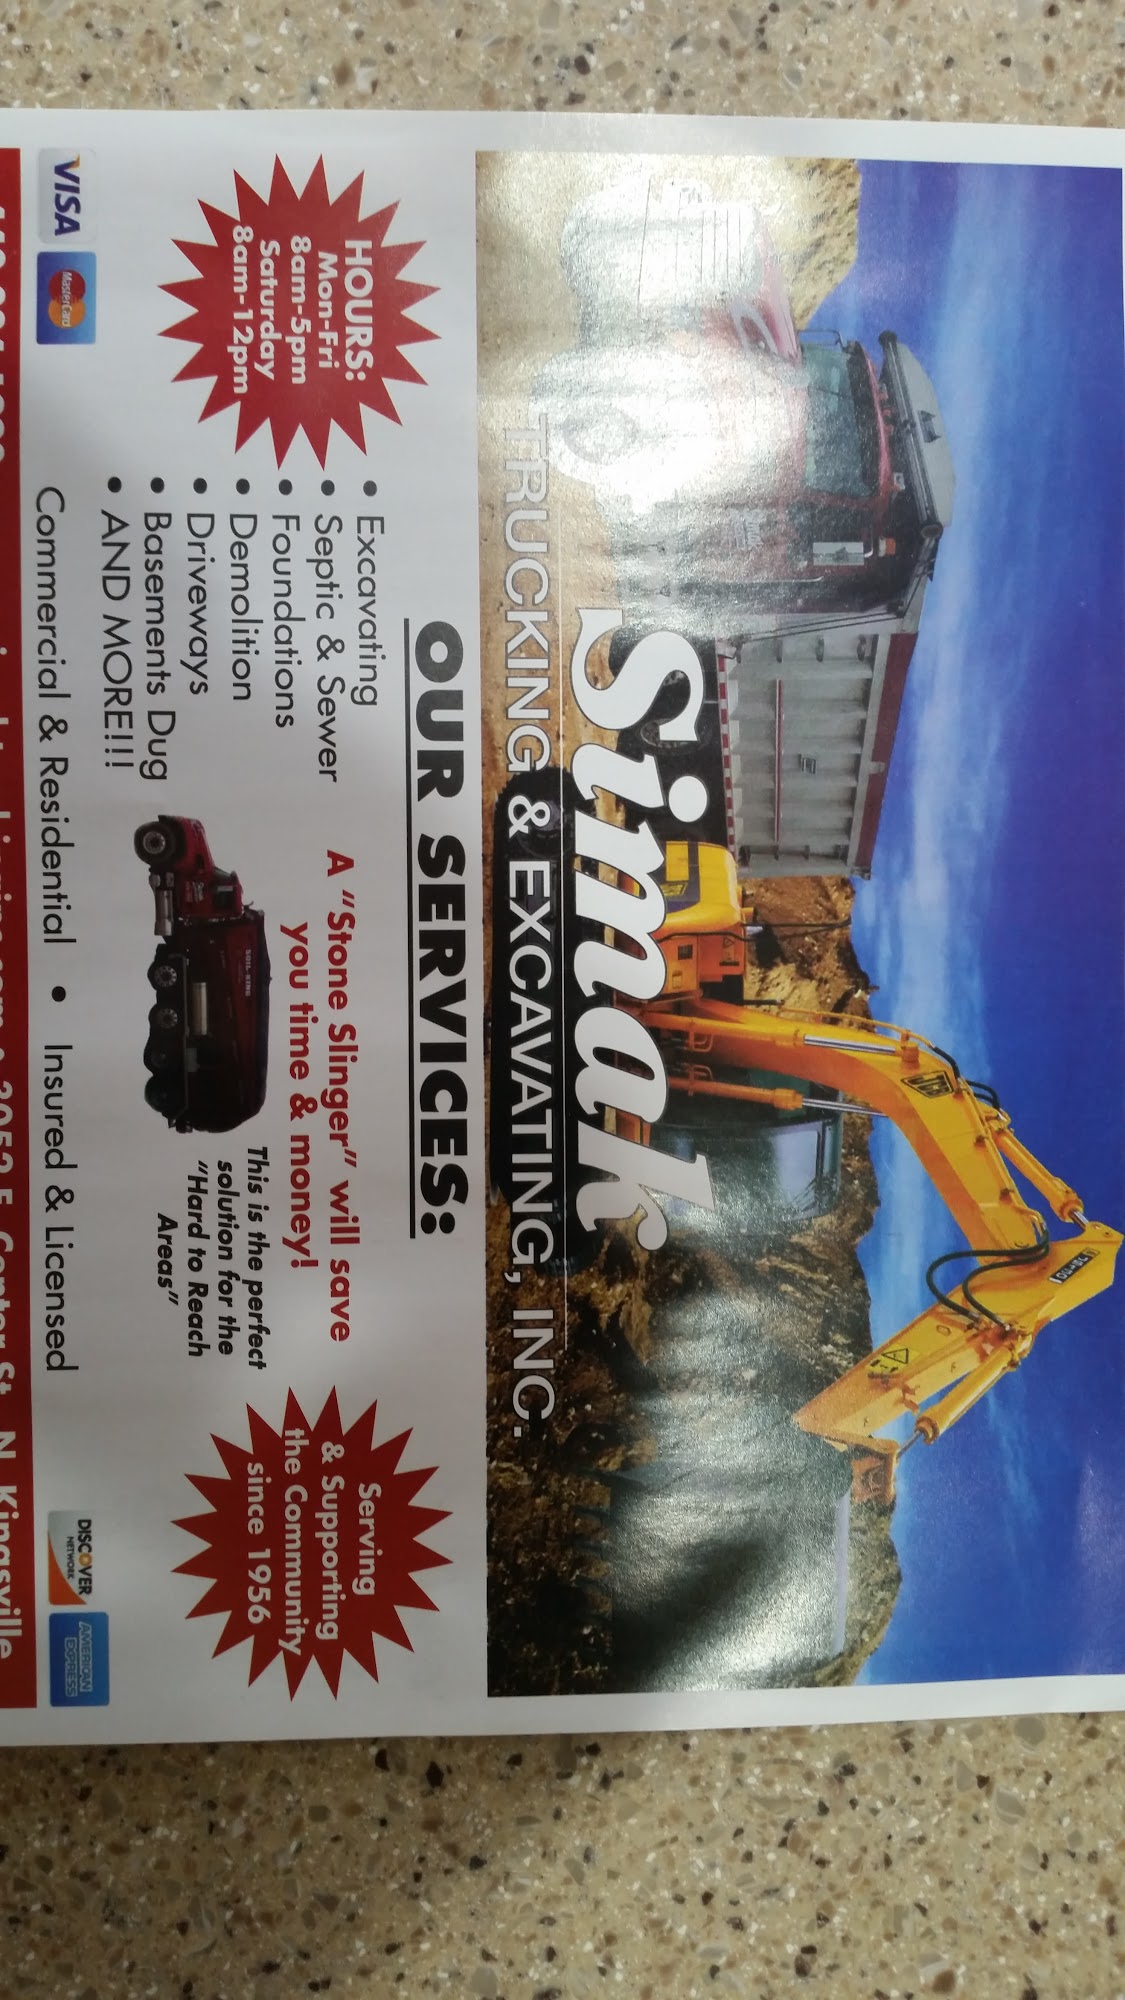 Simak Trucking & Excavating Inc 3052 E Center St, Conneaut Ohio 44030